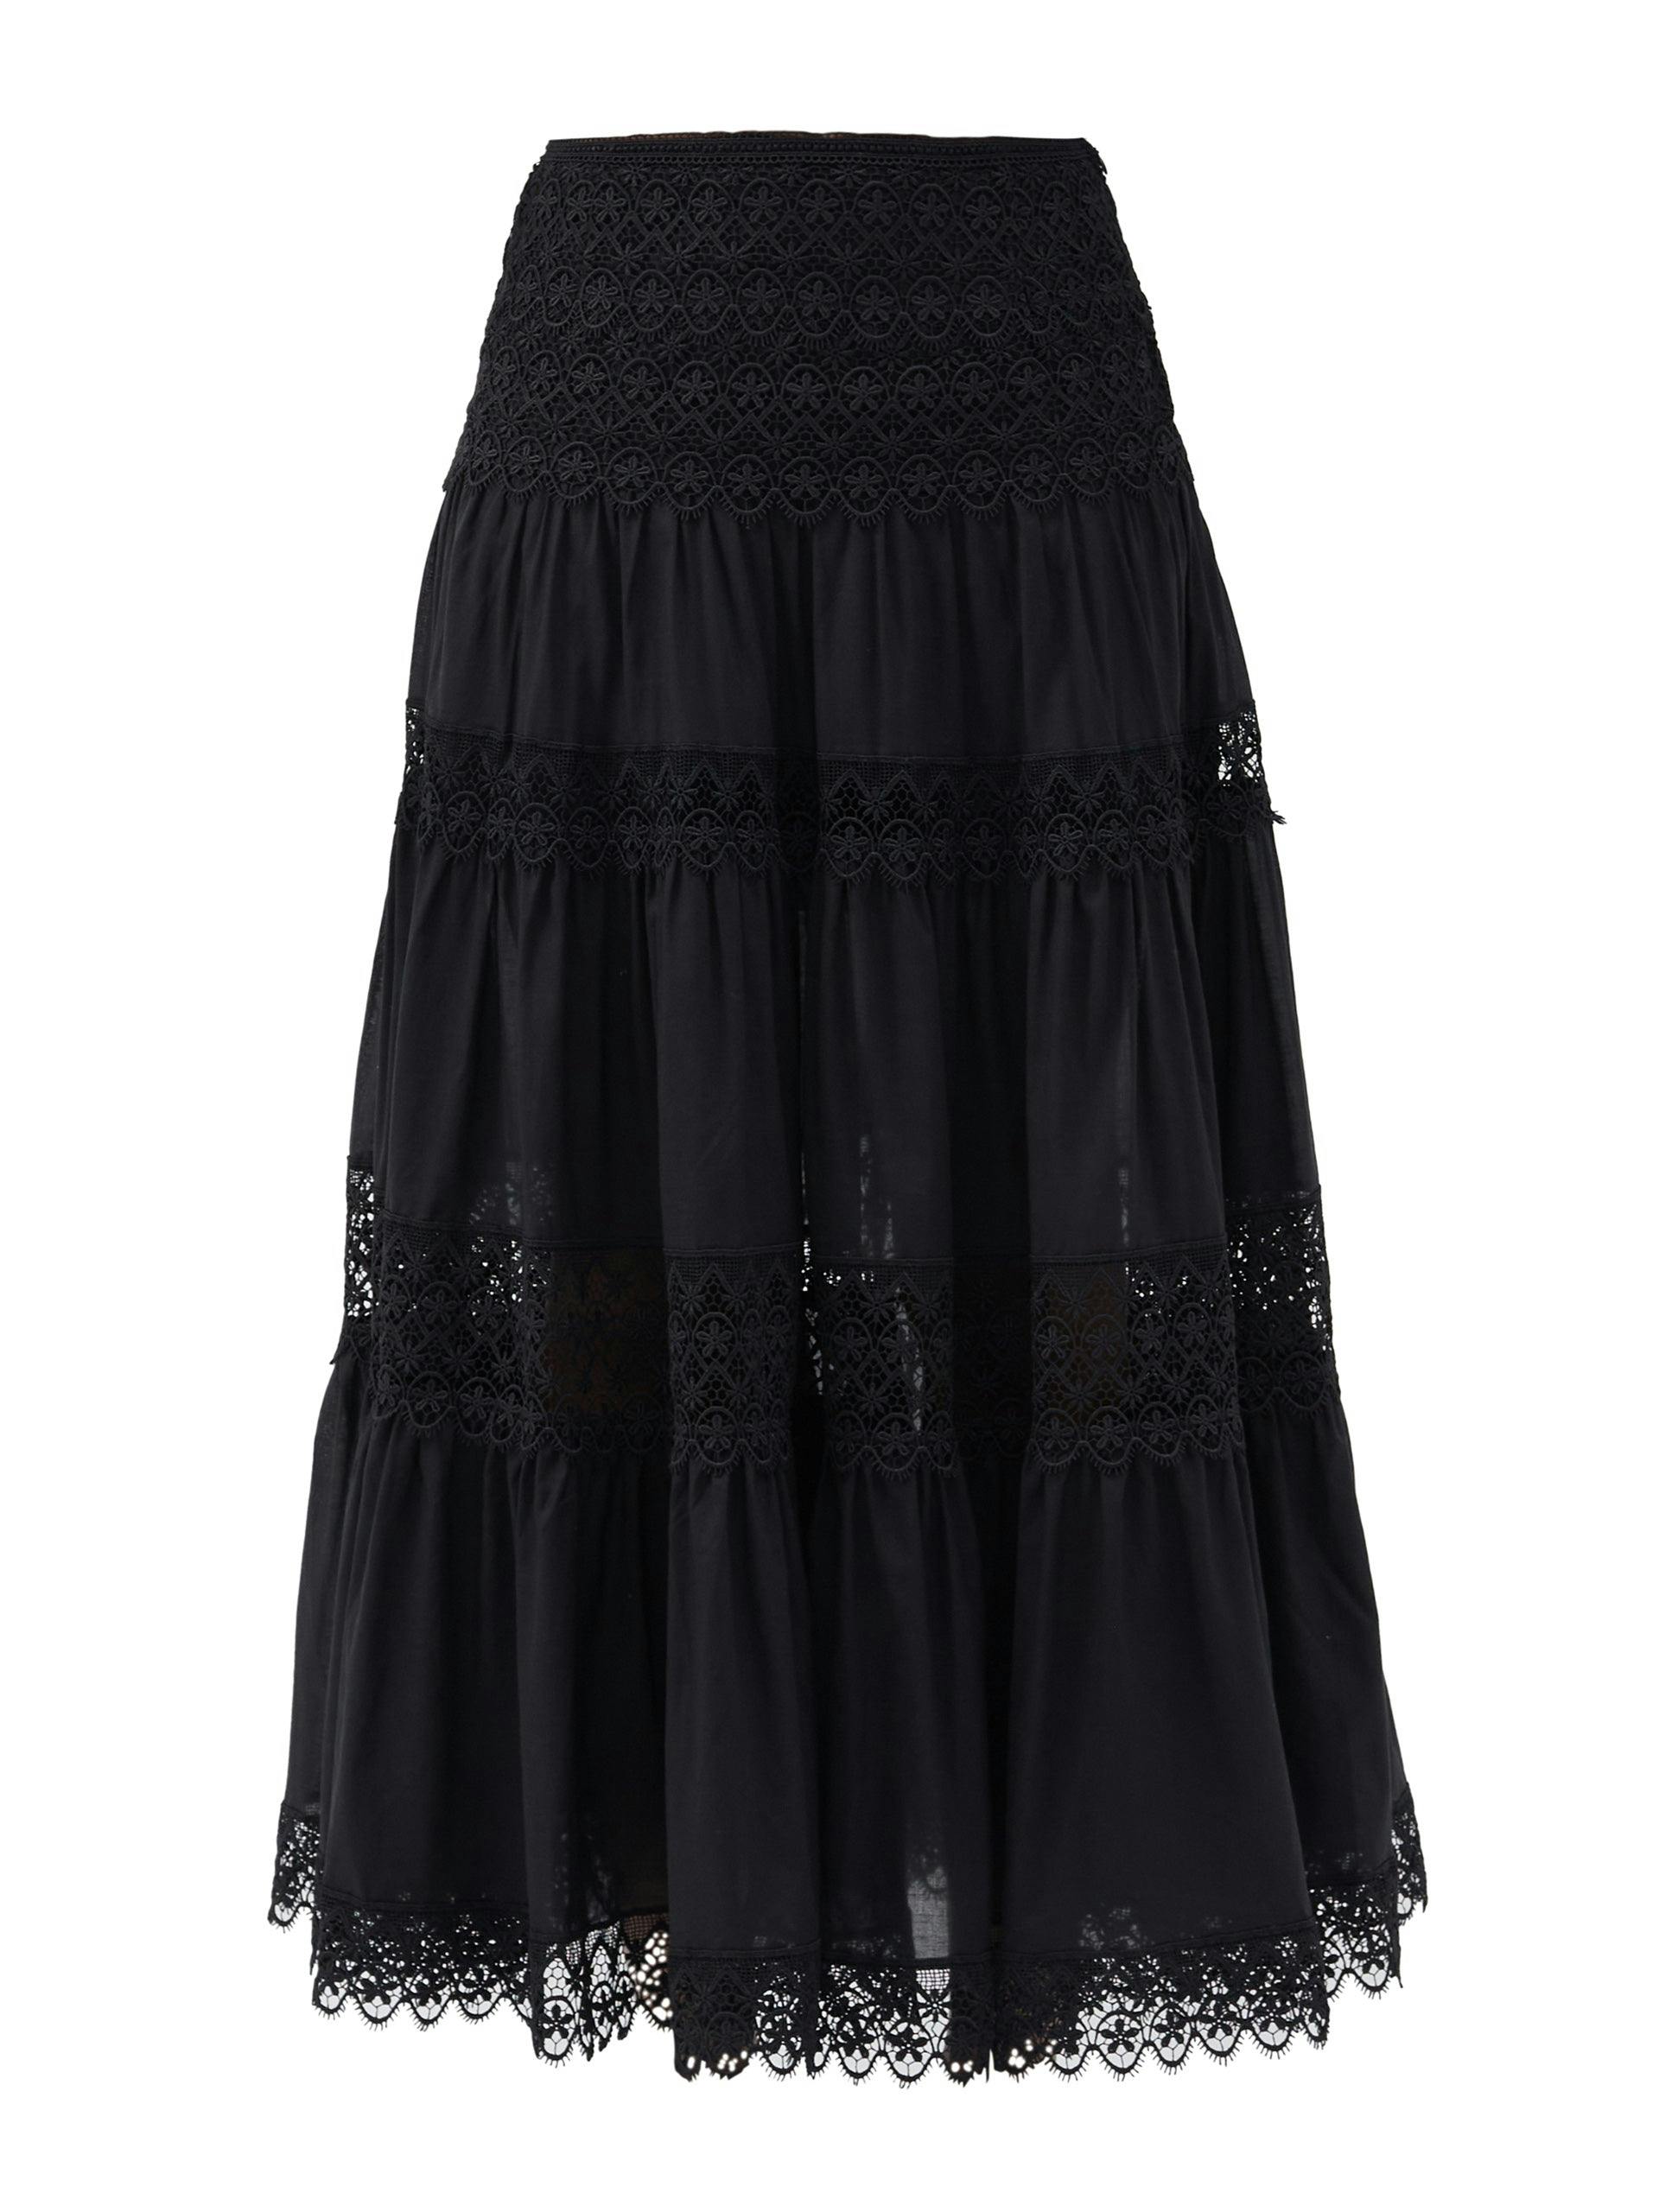 Black lace cotton skirt